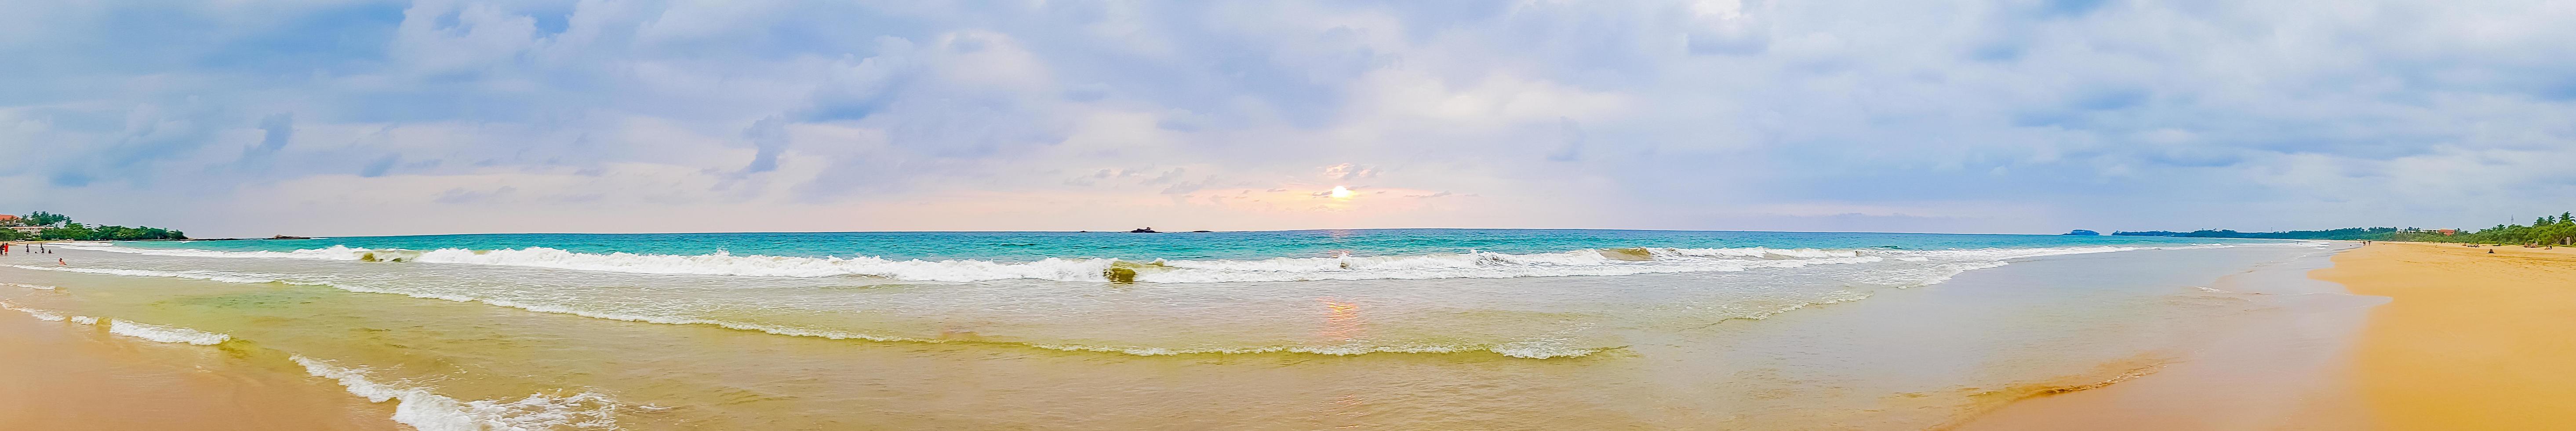 beau panorama de paysage coucher de soleil coloré de la plage de bentota au sri lanka photo